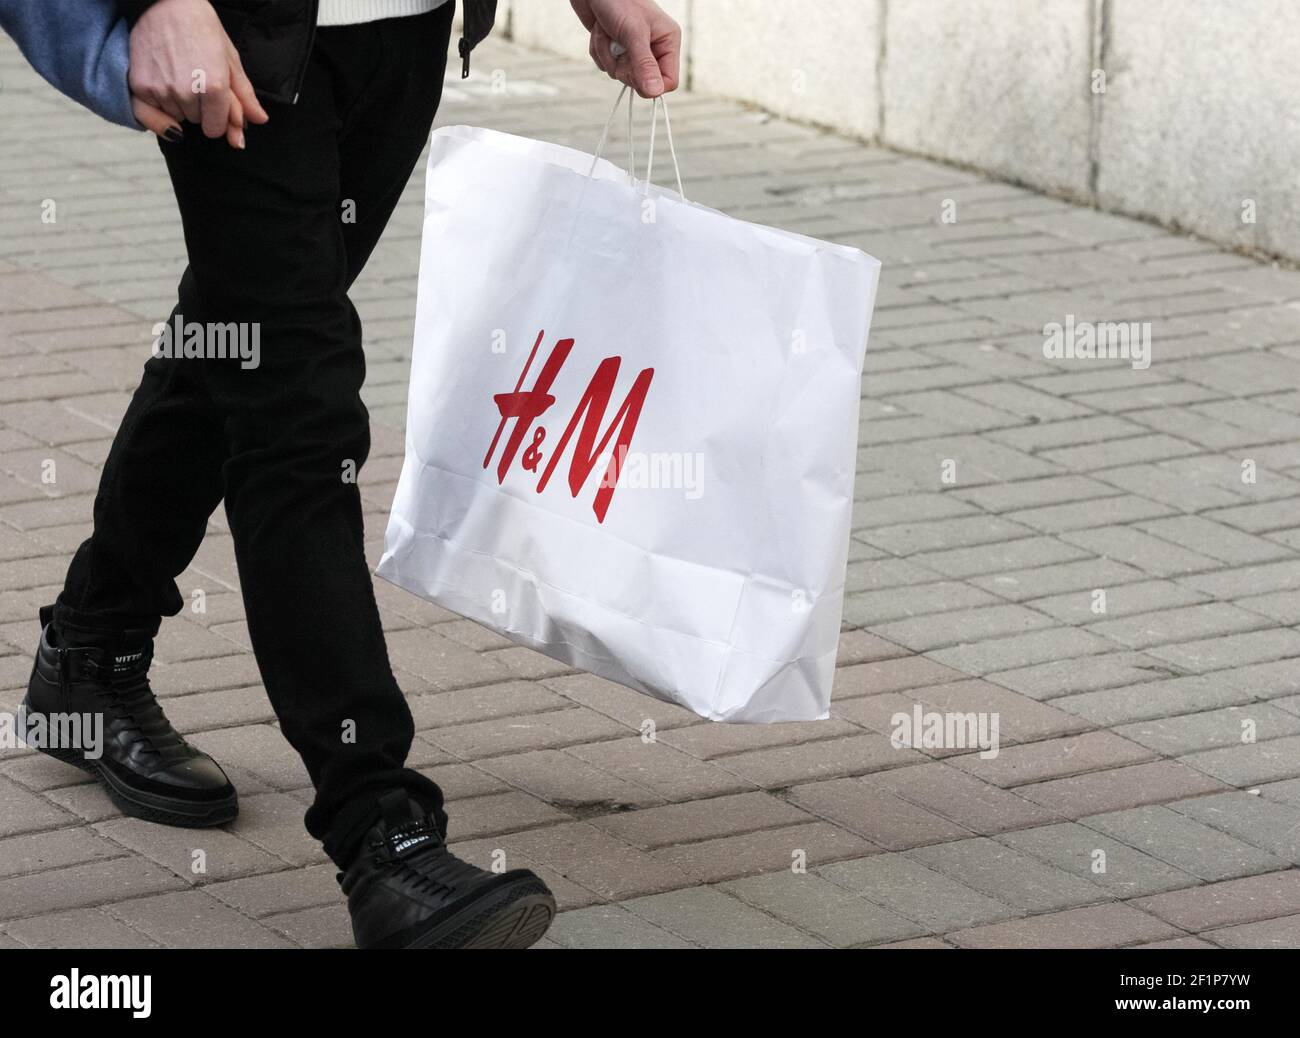 Kiev, Ukraine. 06e mars 2021. Un acheteur tenant un sac avec le logo H & M ( Hennes & Mauritz) d'une société suédoise de vente de vêtements dans sa main  dans une rue